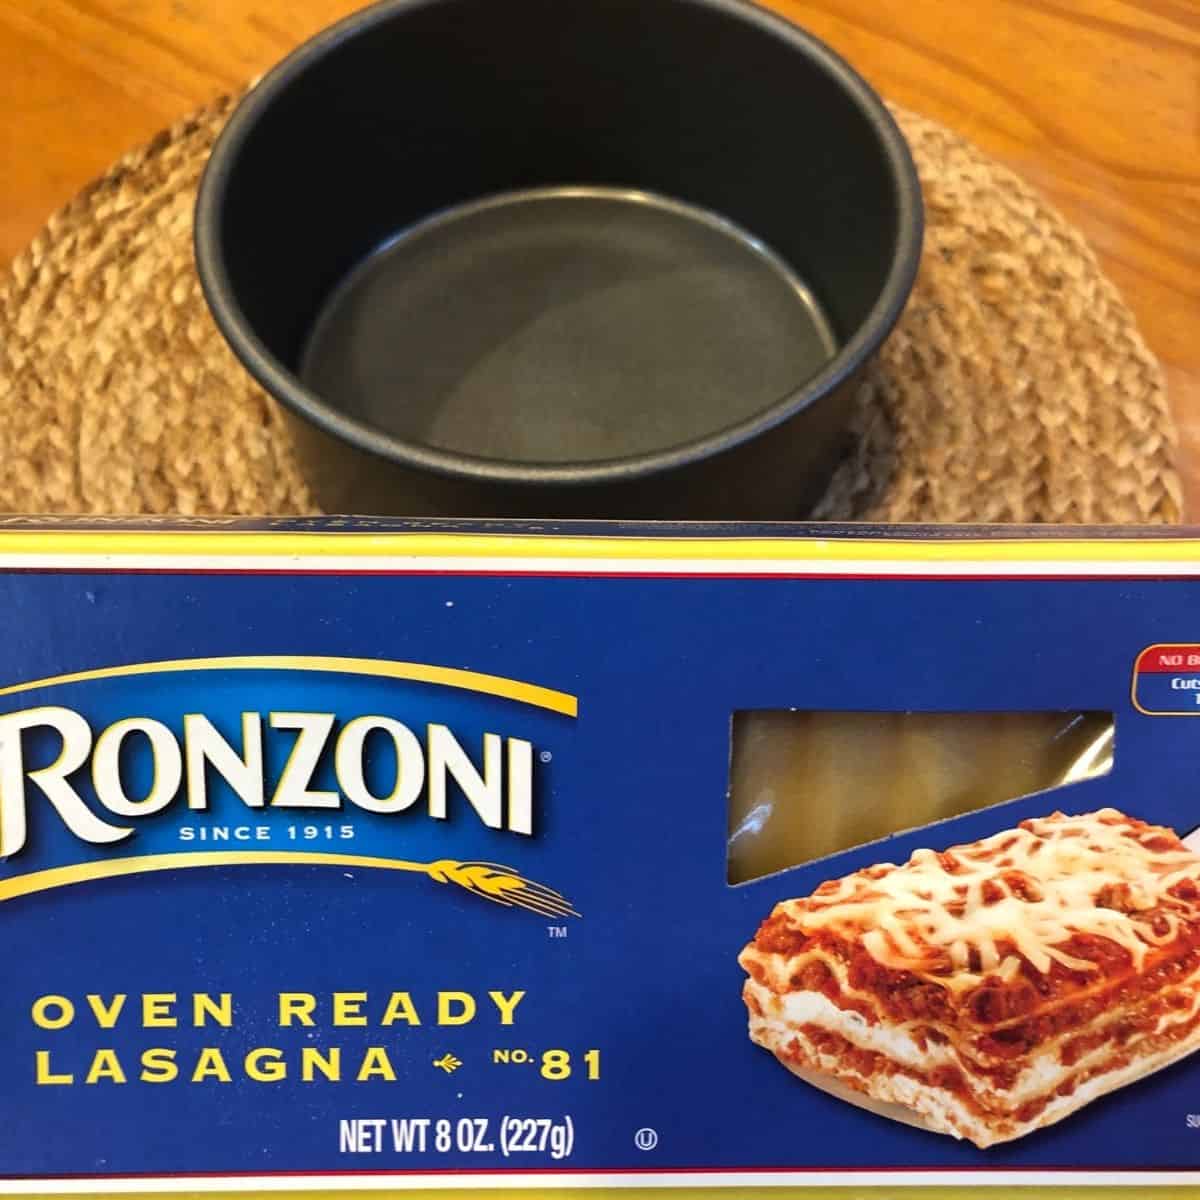 round lasagna pan and no bake lasagna noodles on a wooden table